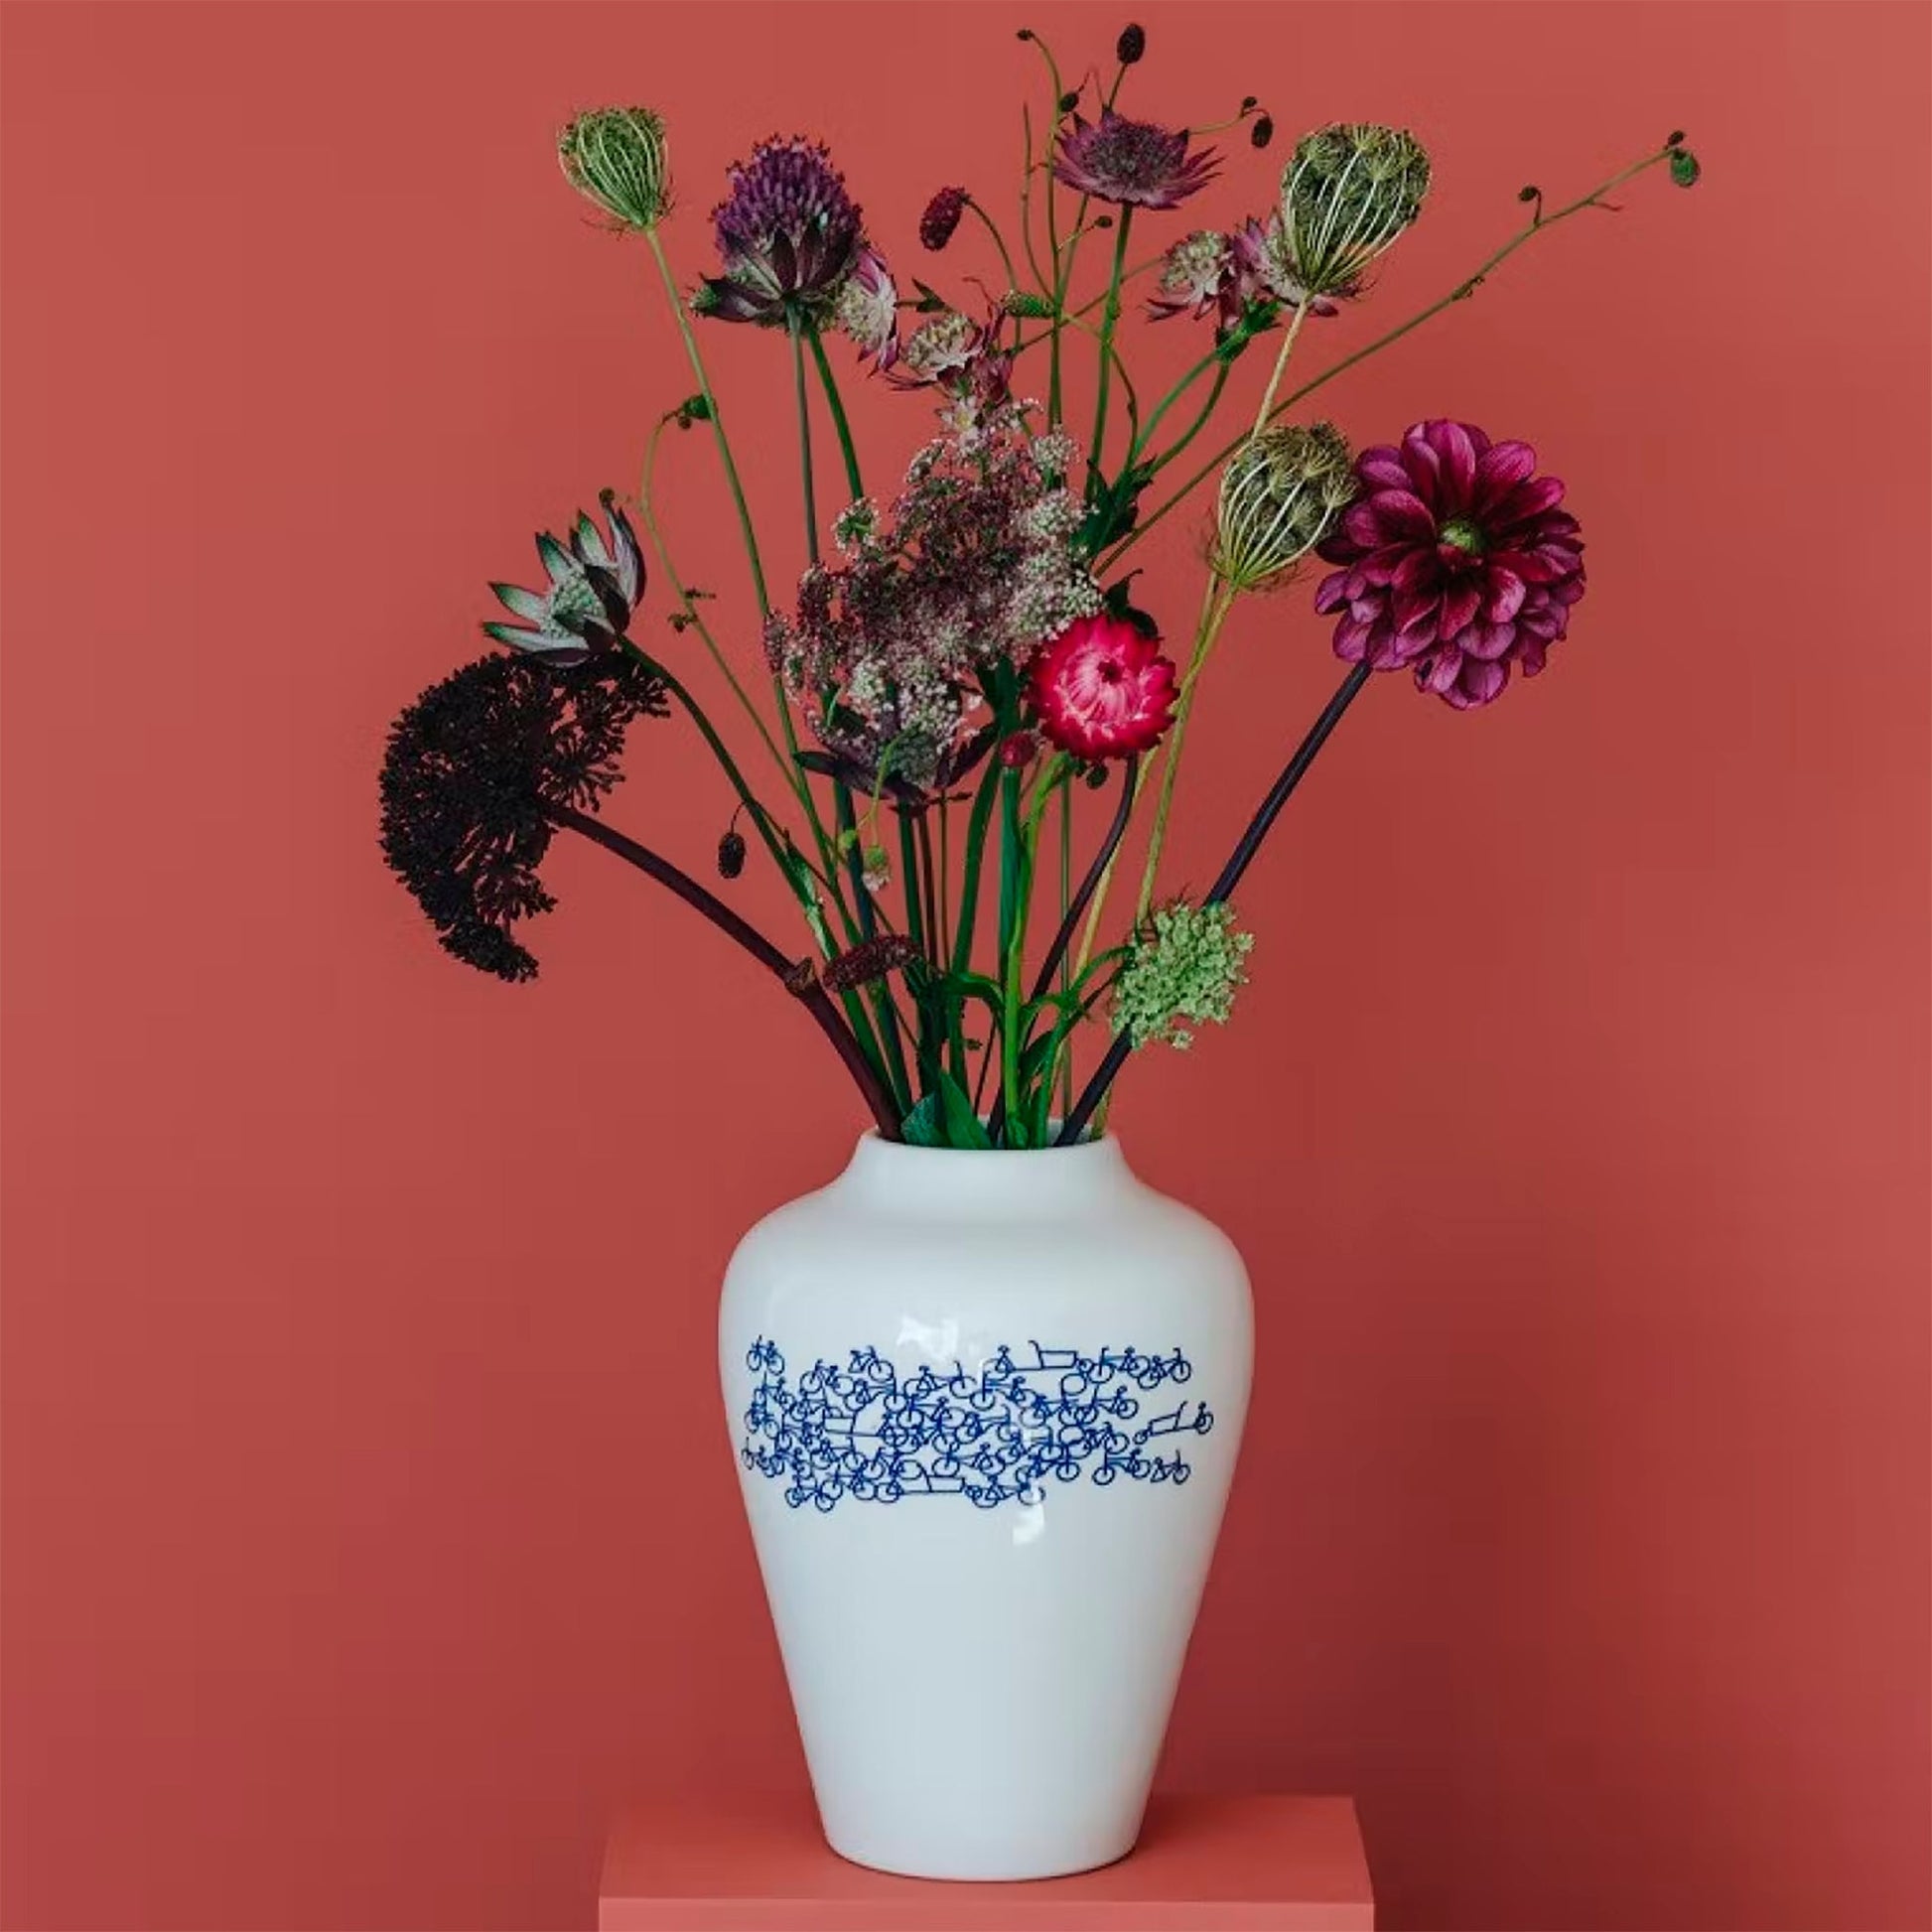 Holländische Vase mit Fahrradmuster oben bauchig - ø18 cm - Vandeley